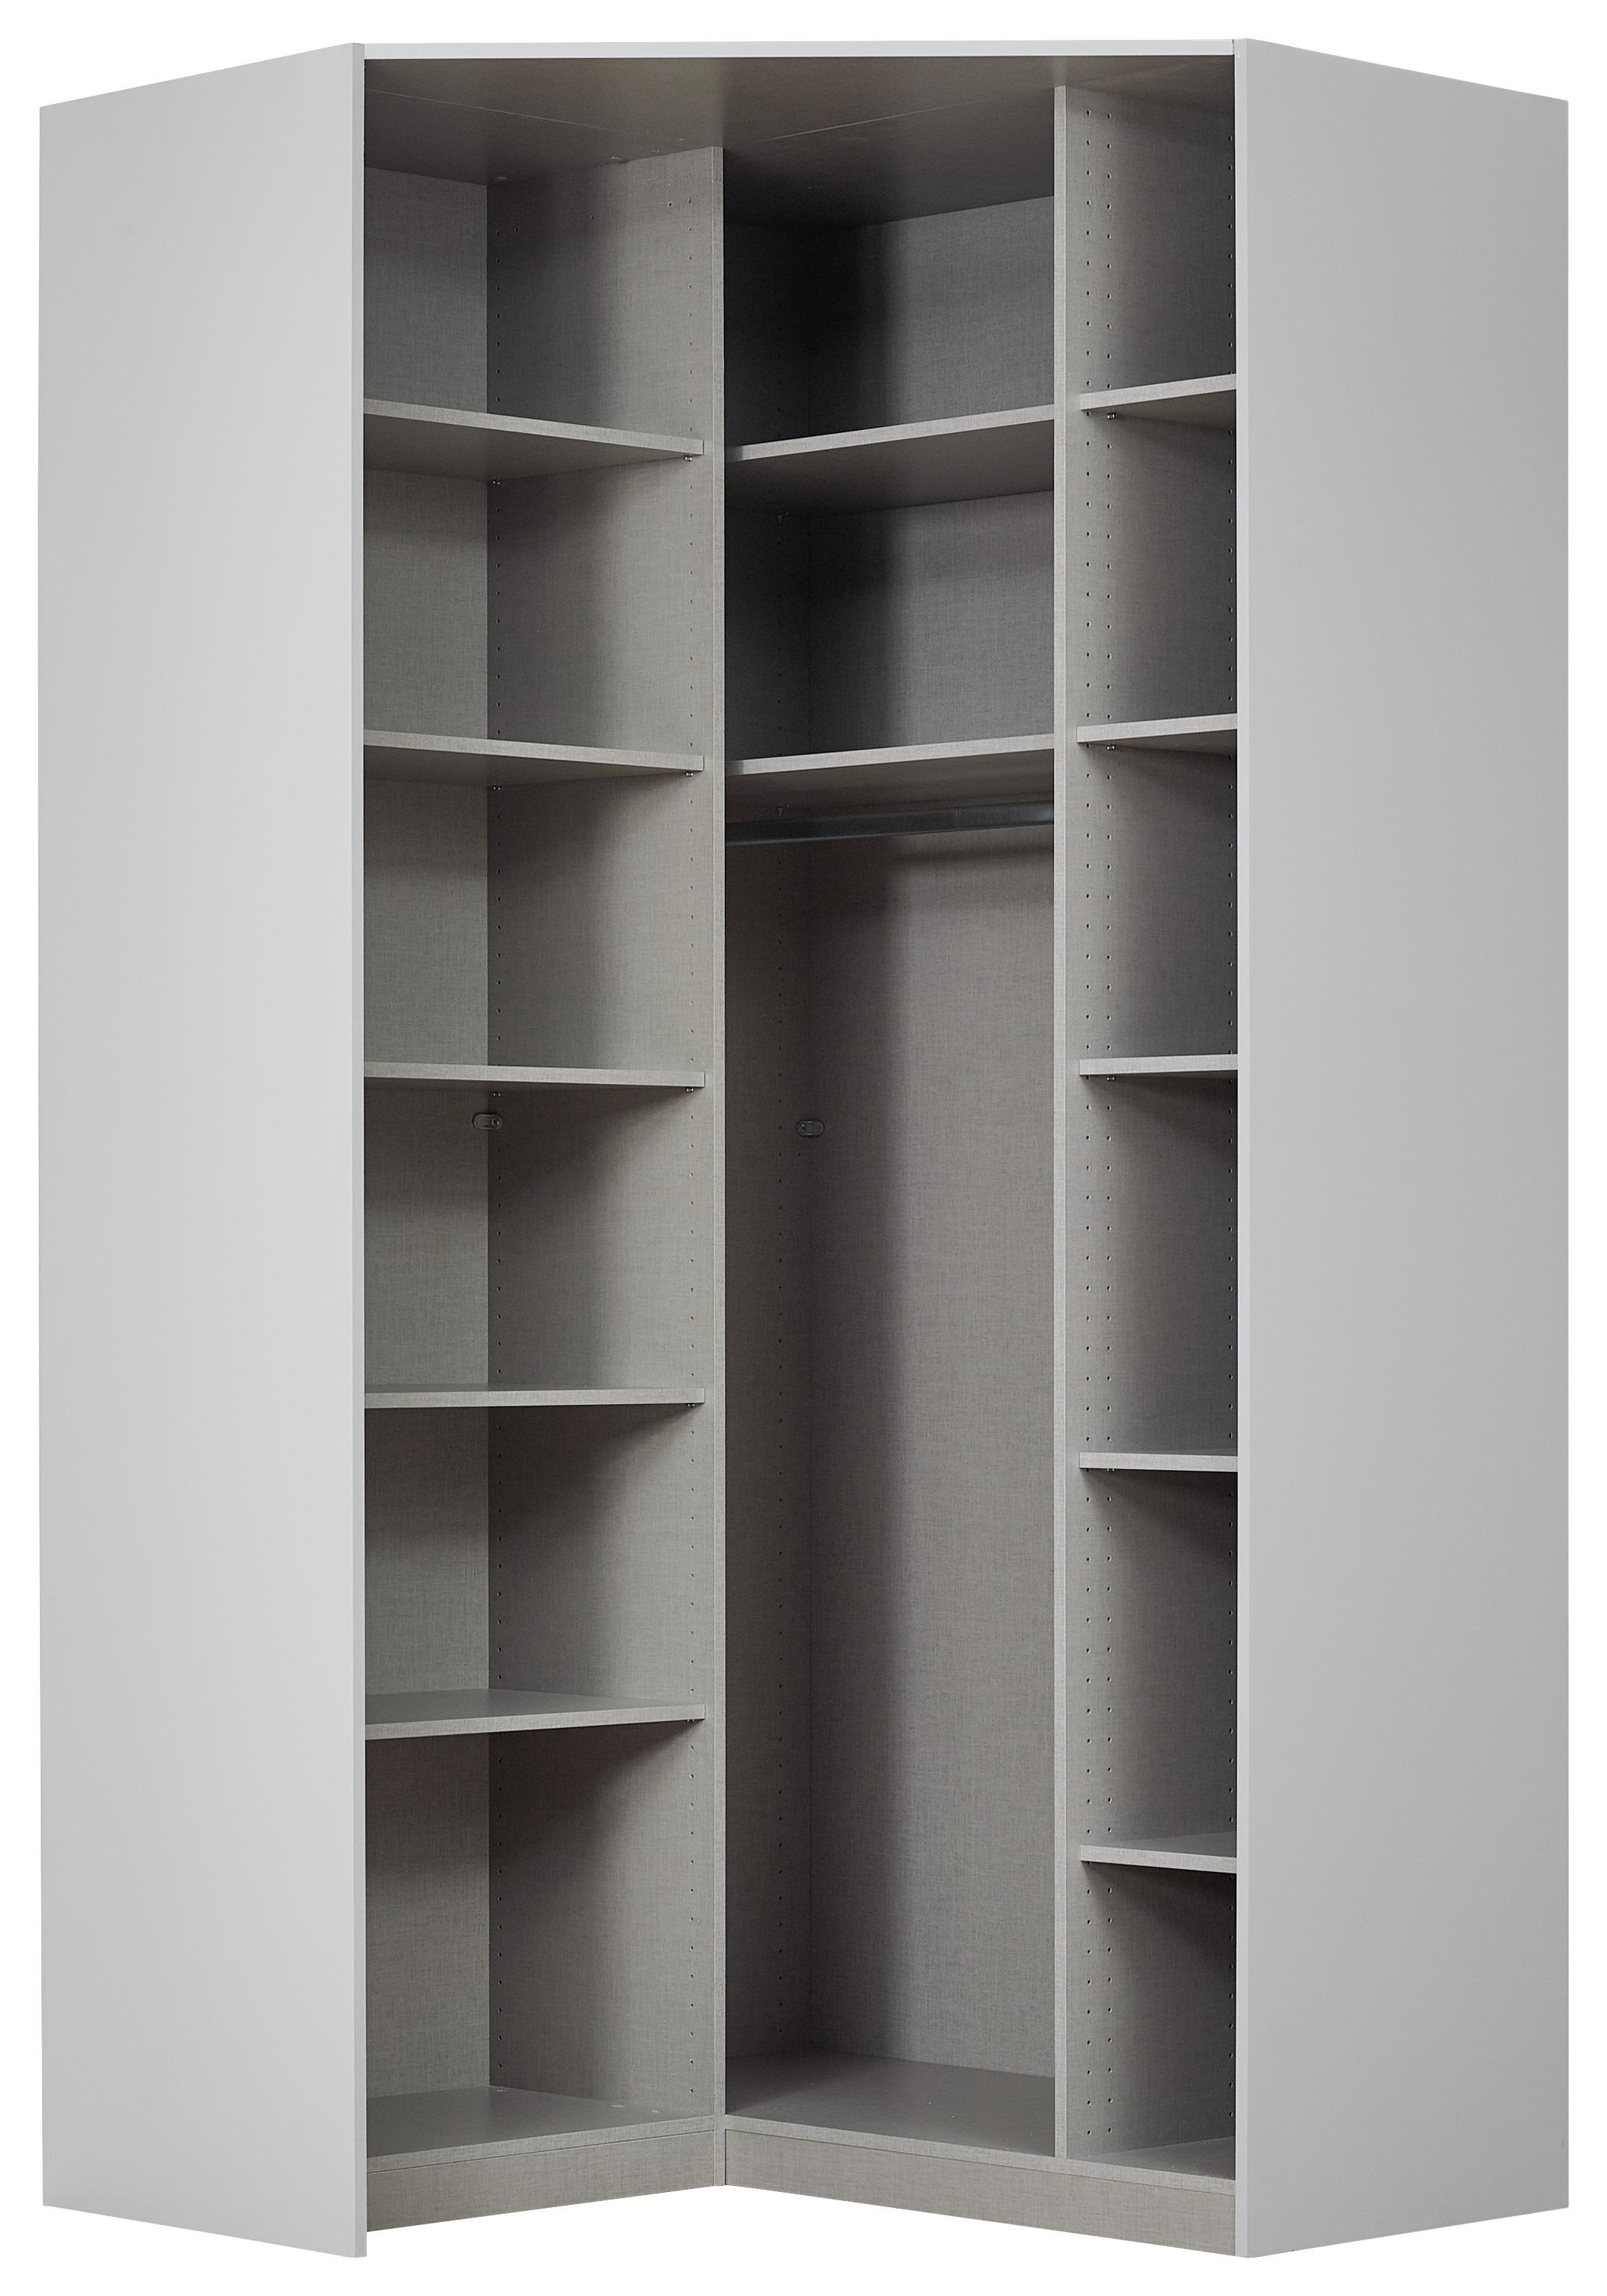 Rohová Šatní Skříň Alabama - světle šedá/barvy hliníku, Moderní, kompozitní dřevo (117/229/117cm)